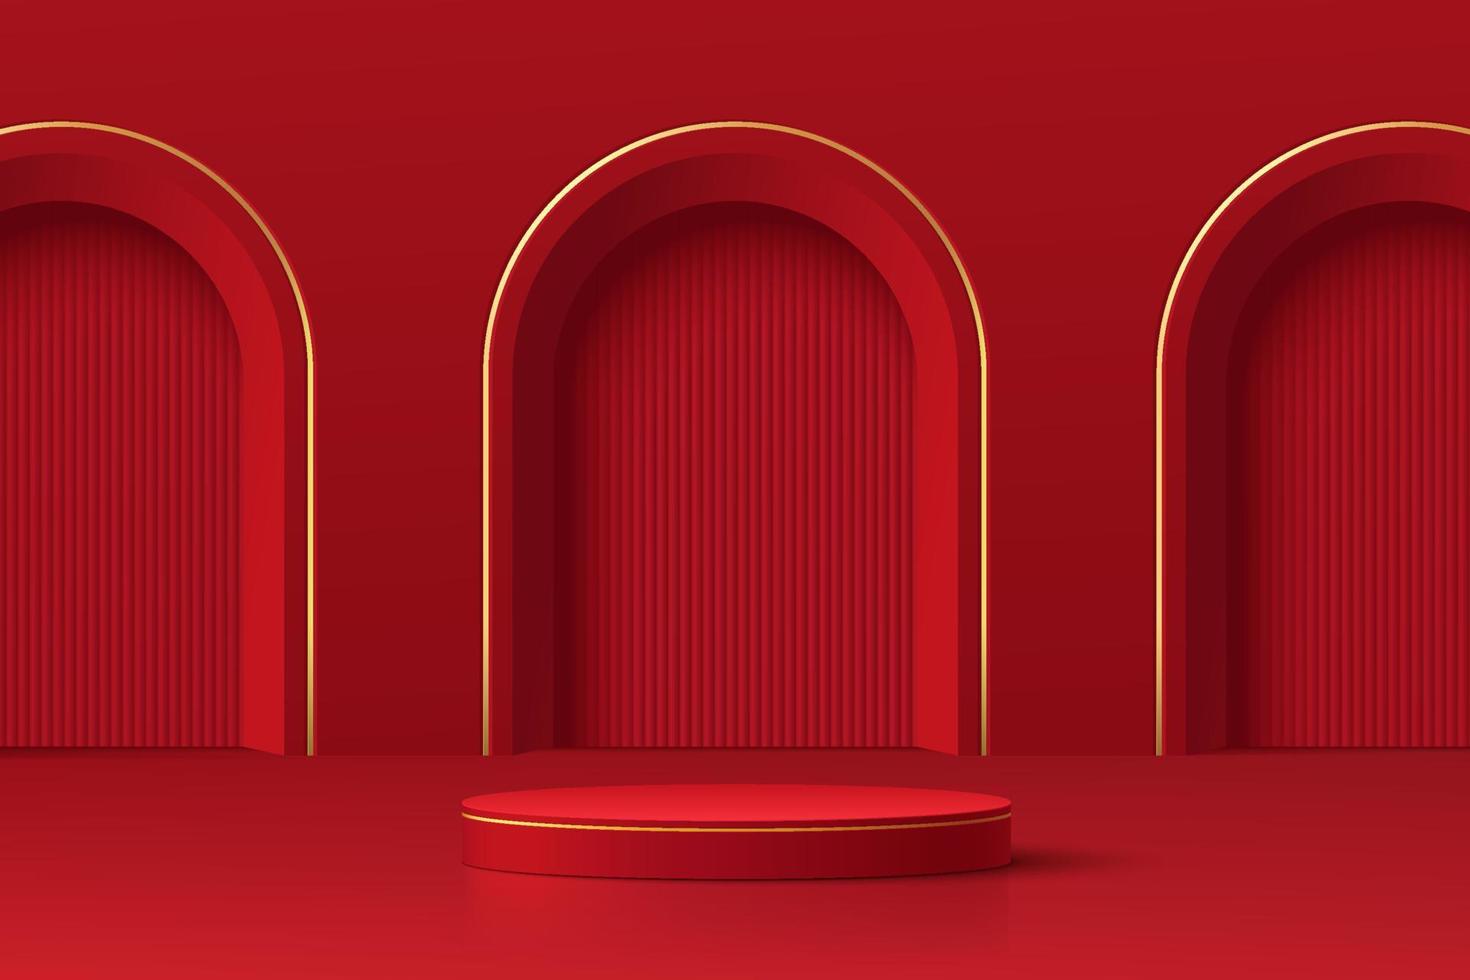 pódio de pedestal de cilindro 3d vermelho escuro e dourado realista com textura vertical na porta do arco. cena mínima para vitrine de produtos, exibição de promoção. plataforma de sala de estúdio abstrata. feliz dia da lanterna. vetor